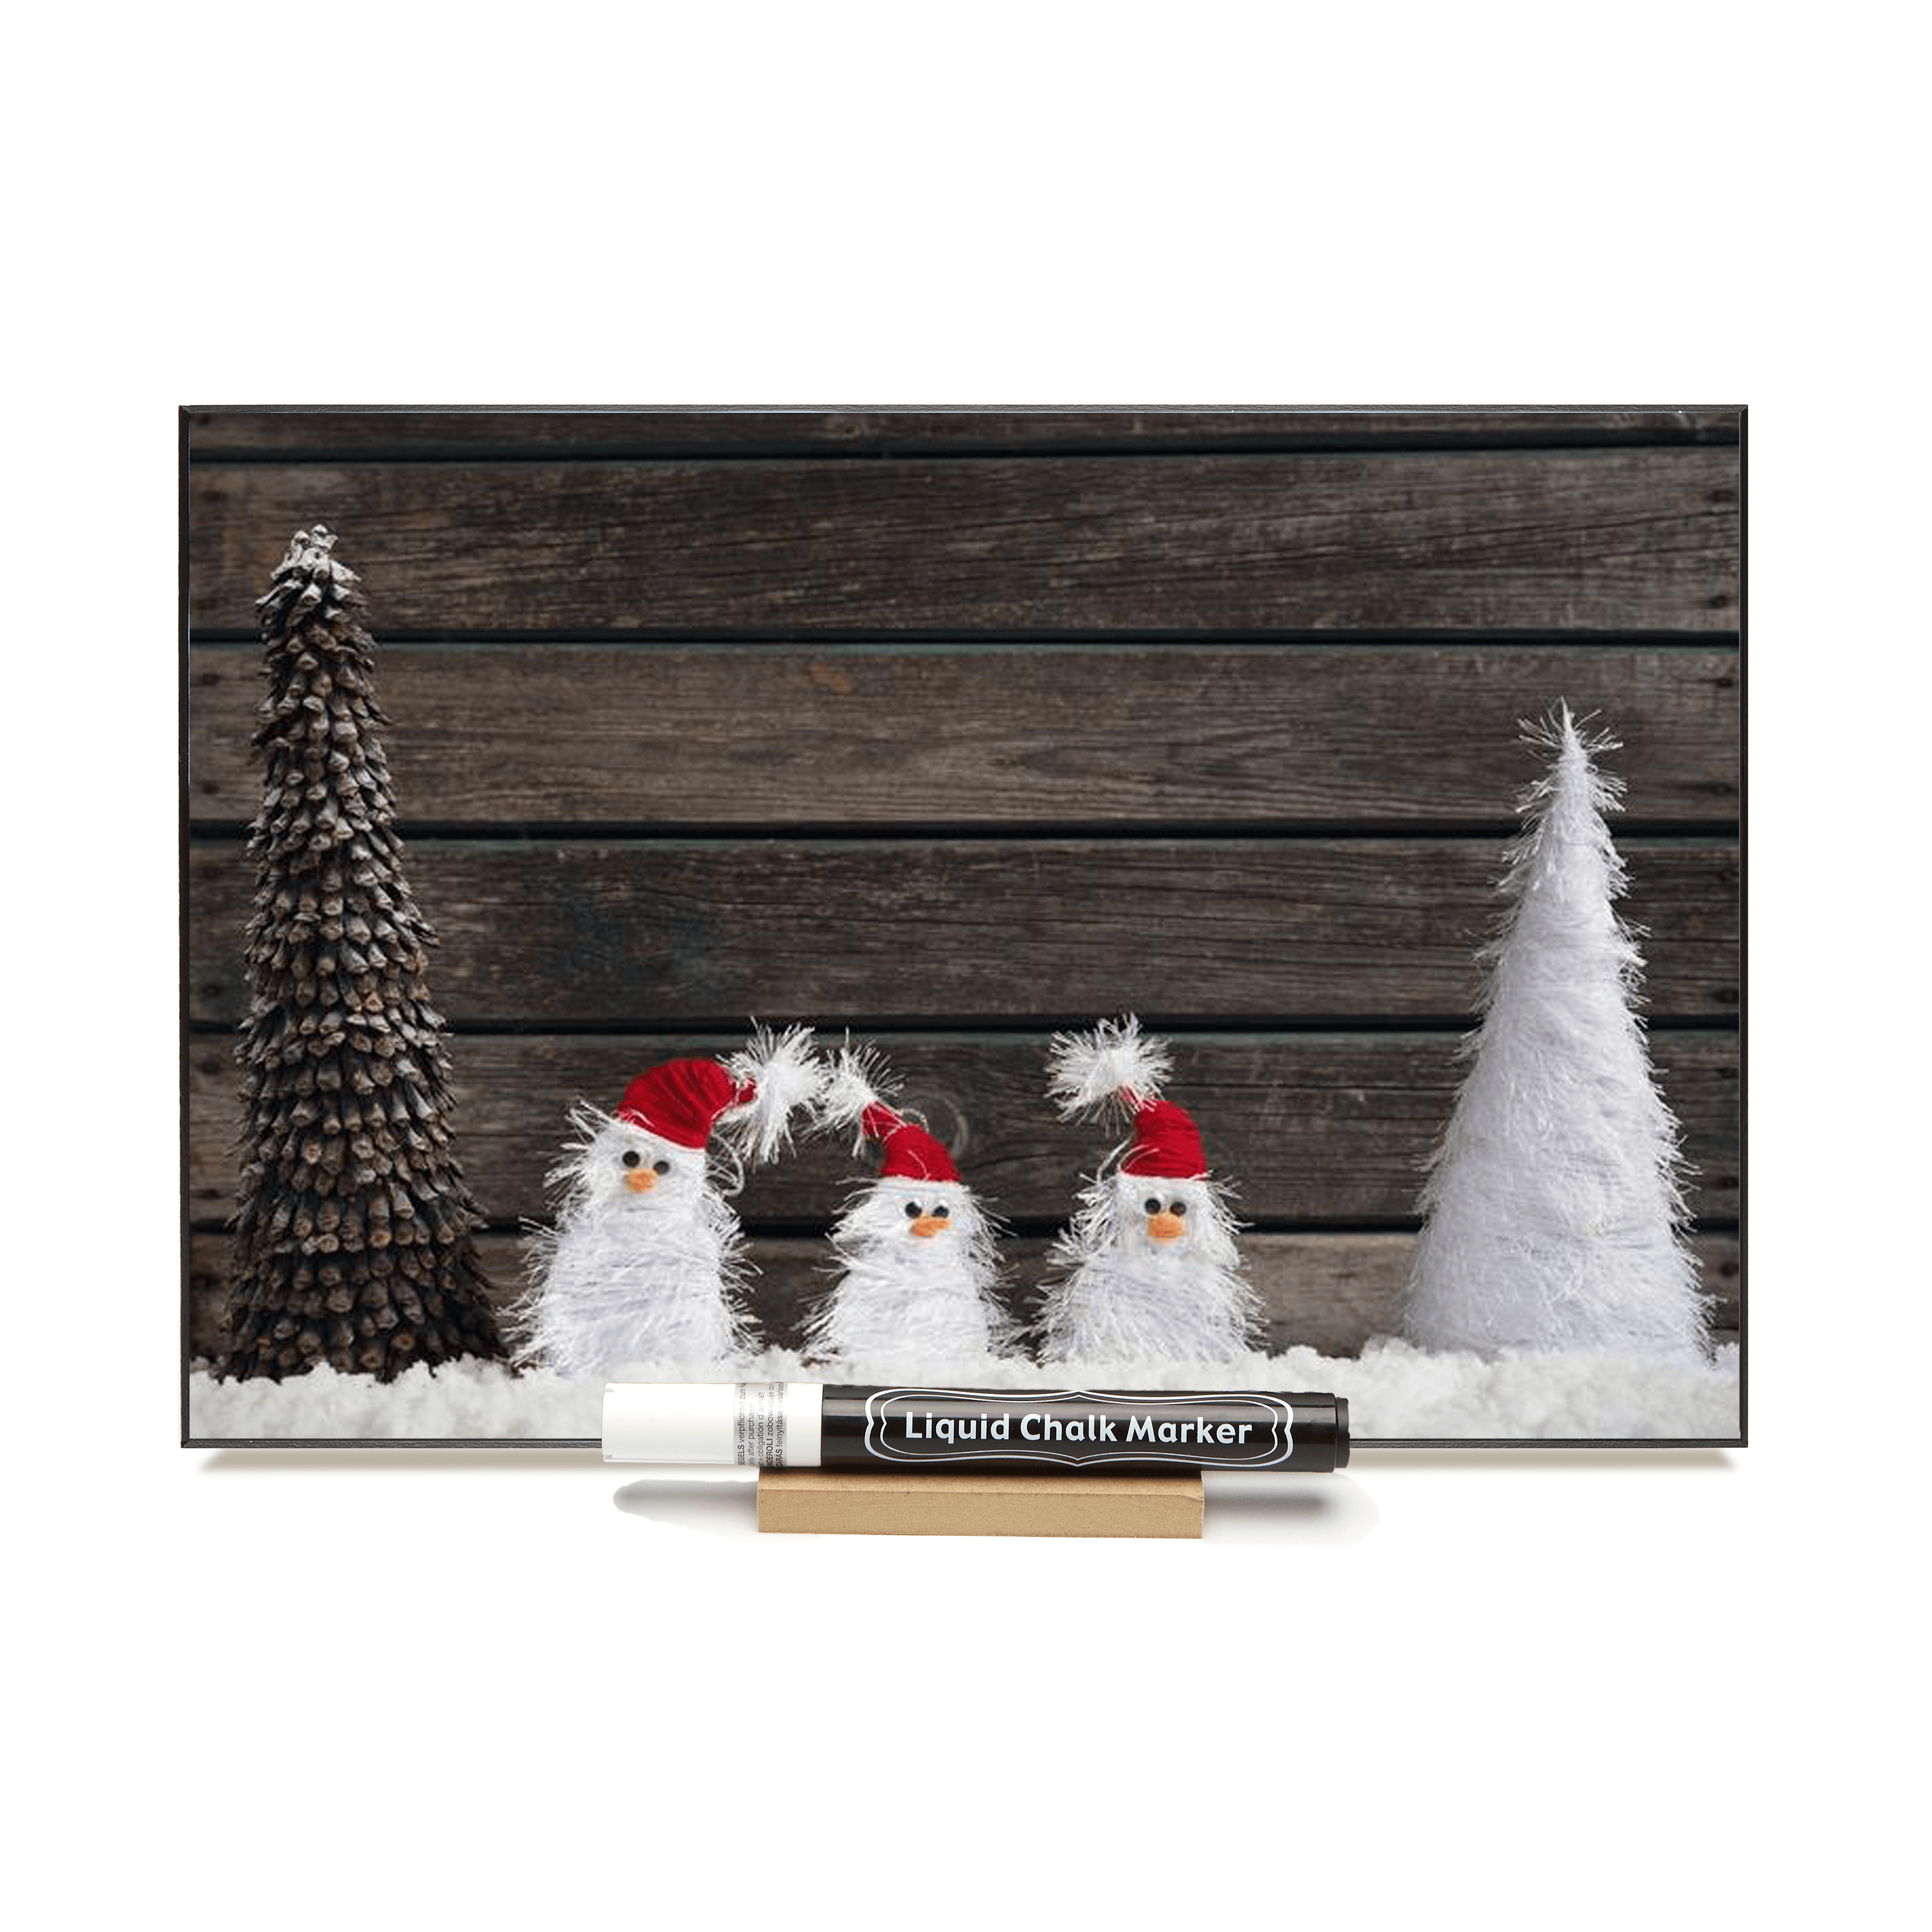 "Snowmen on Barnboard" PHOTO CHALKBOARD   Includes Chalkboard, Chalk Marker & Stand